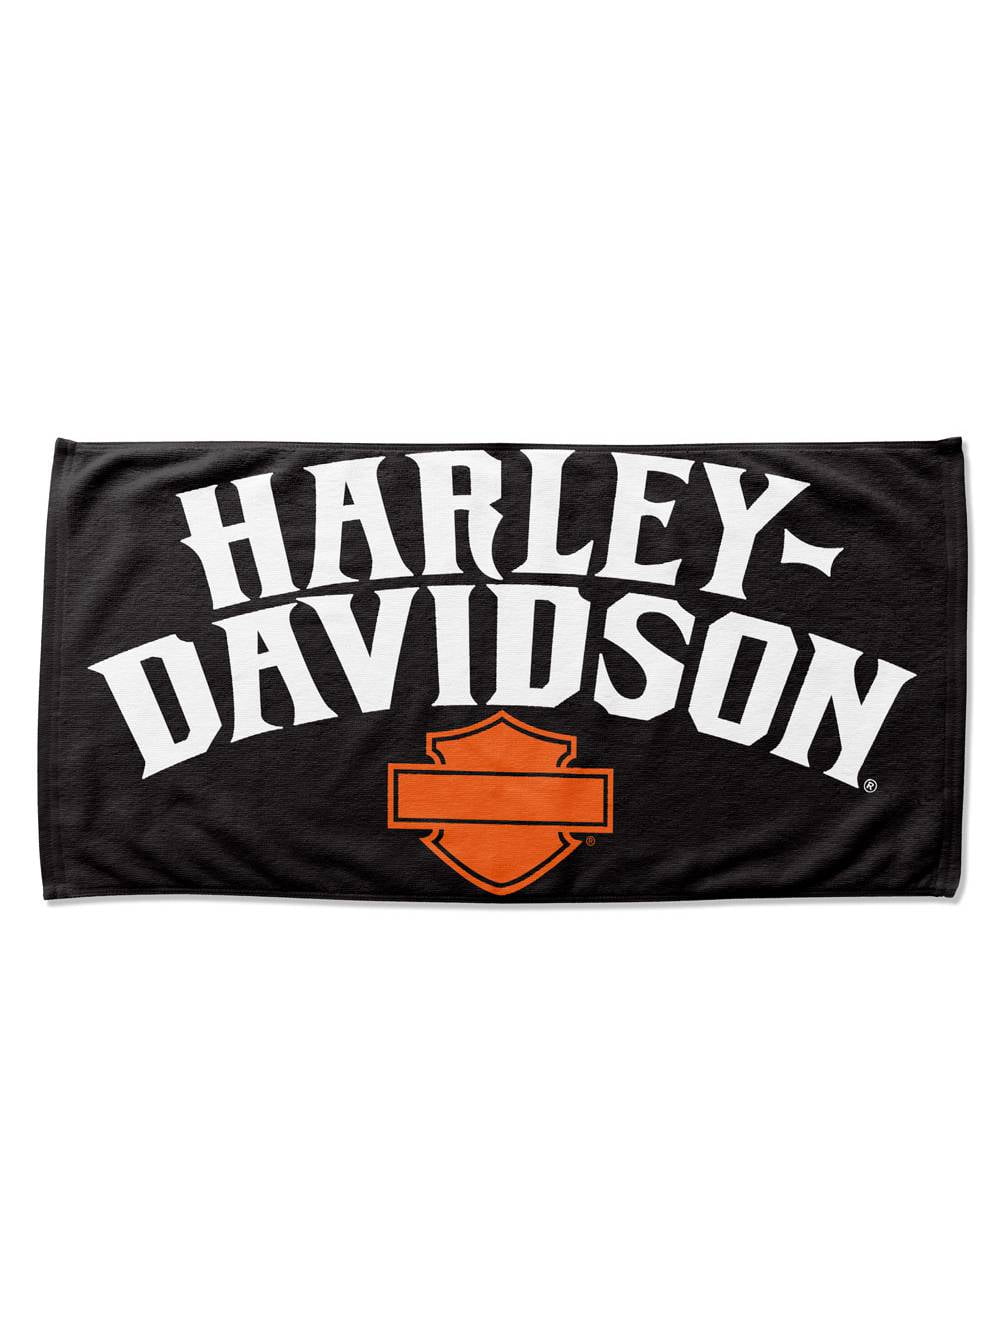 Harley Davidson Vibe Beach Towel 